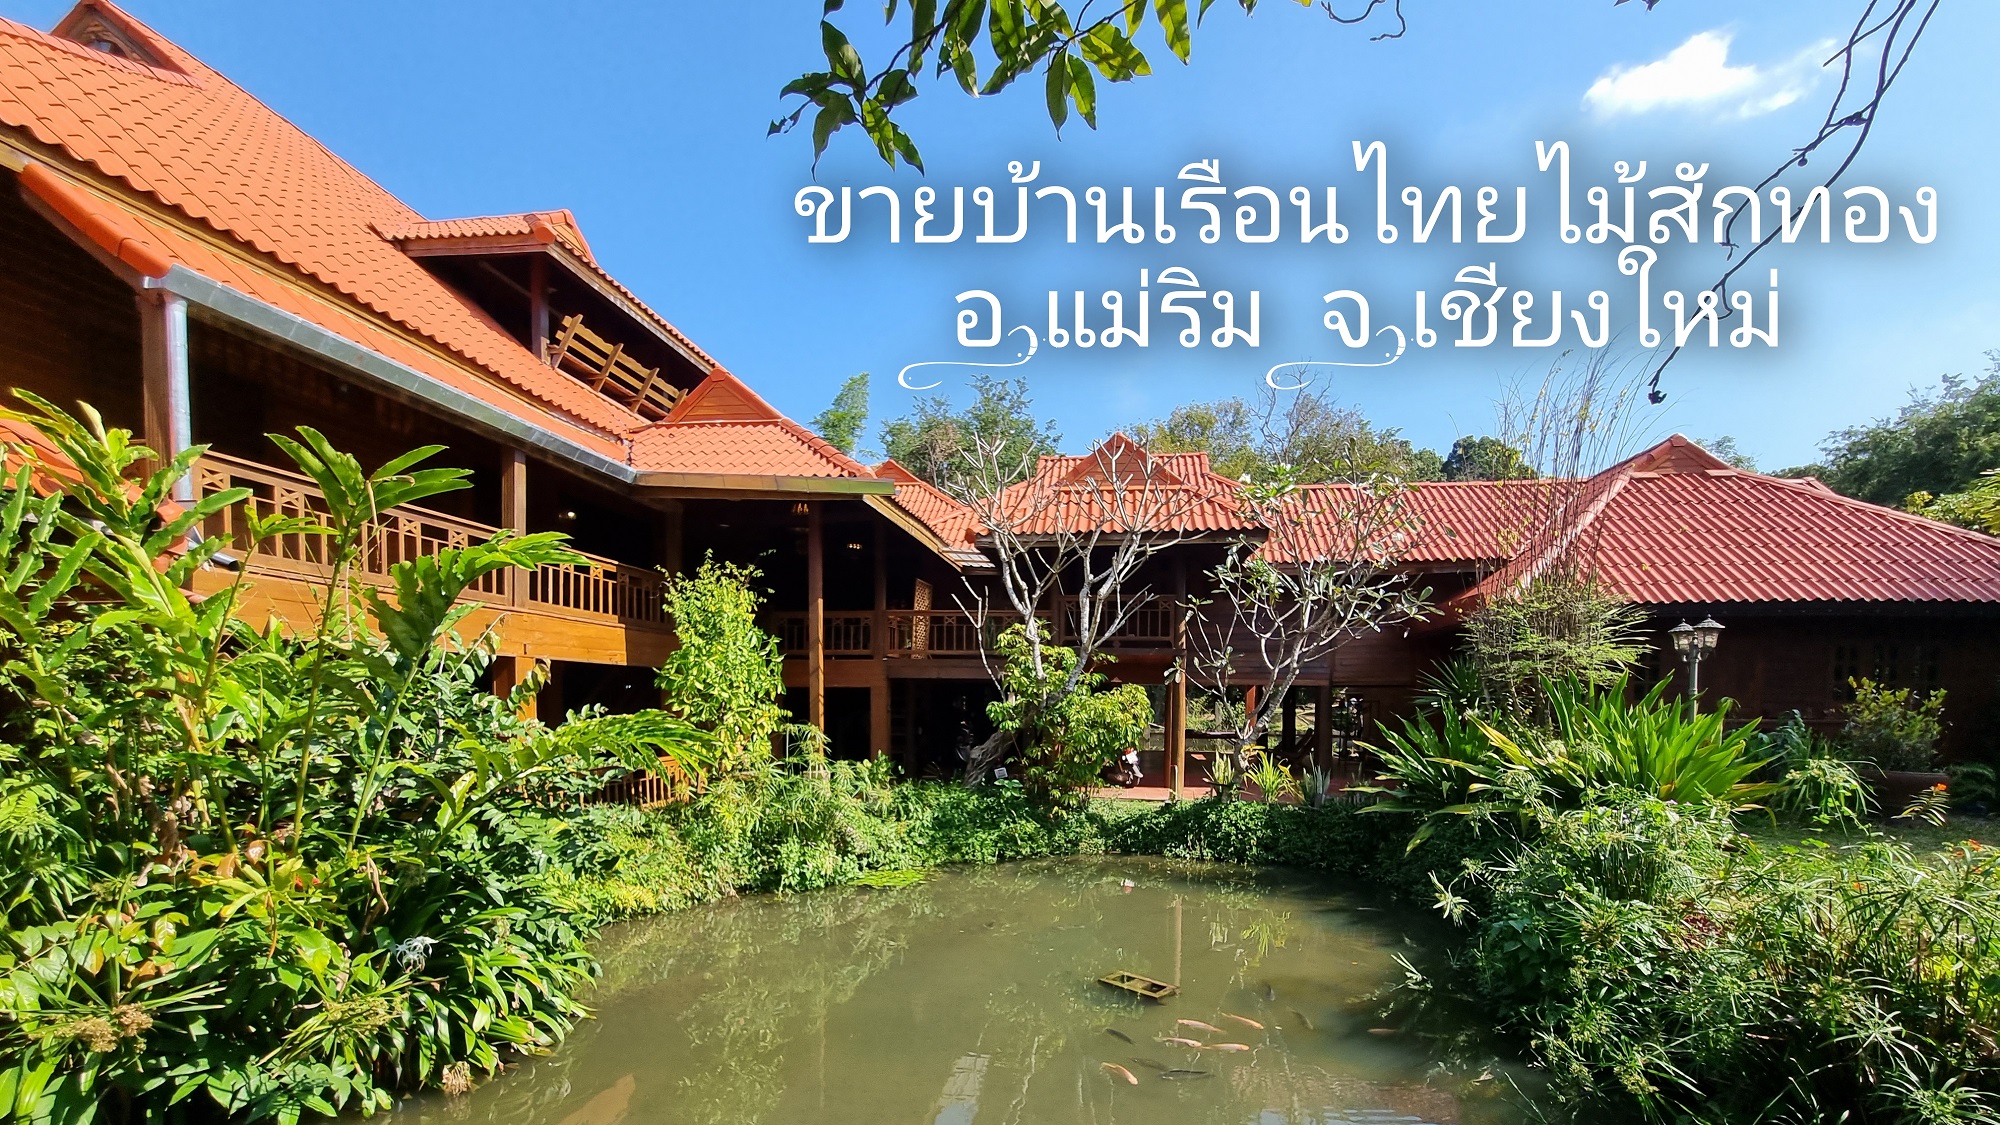 ขายบ้านเรือนไทยไม้สักทอง ใกล้โรงแรมโฟร์ซีซัน เนื้อที่ 1-0-39 ไร่ ราคา 25 ล้าน